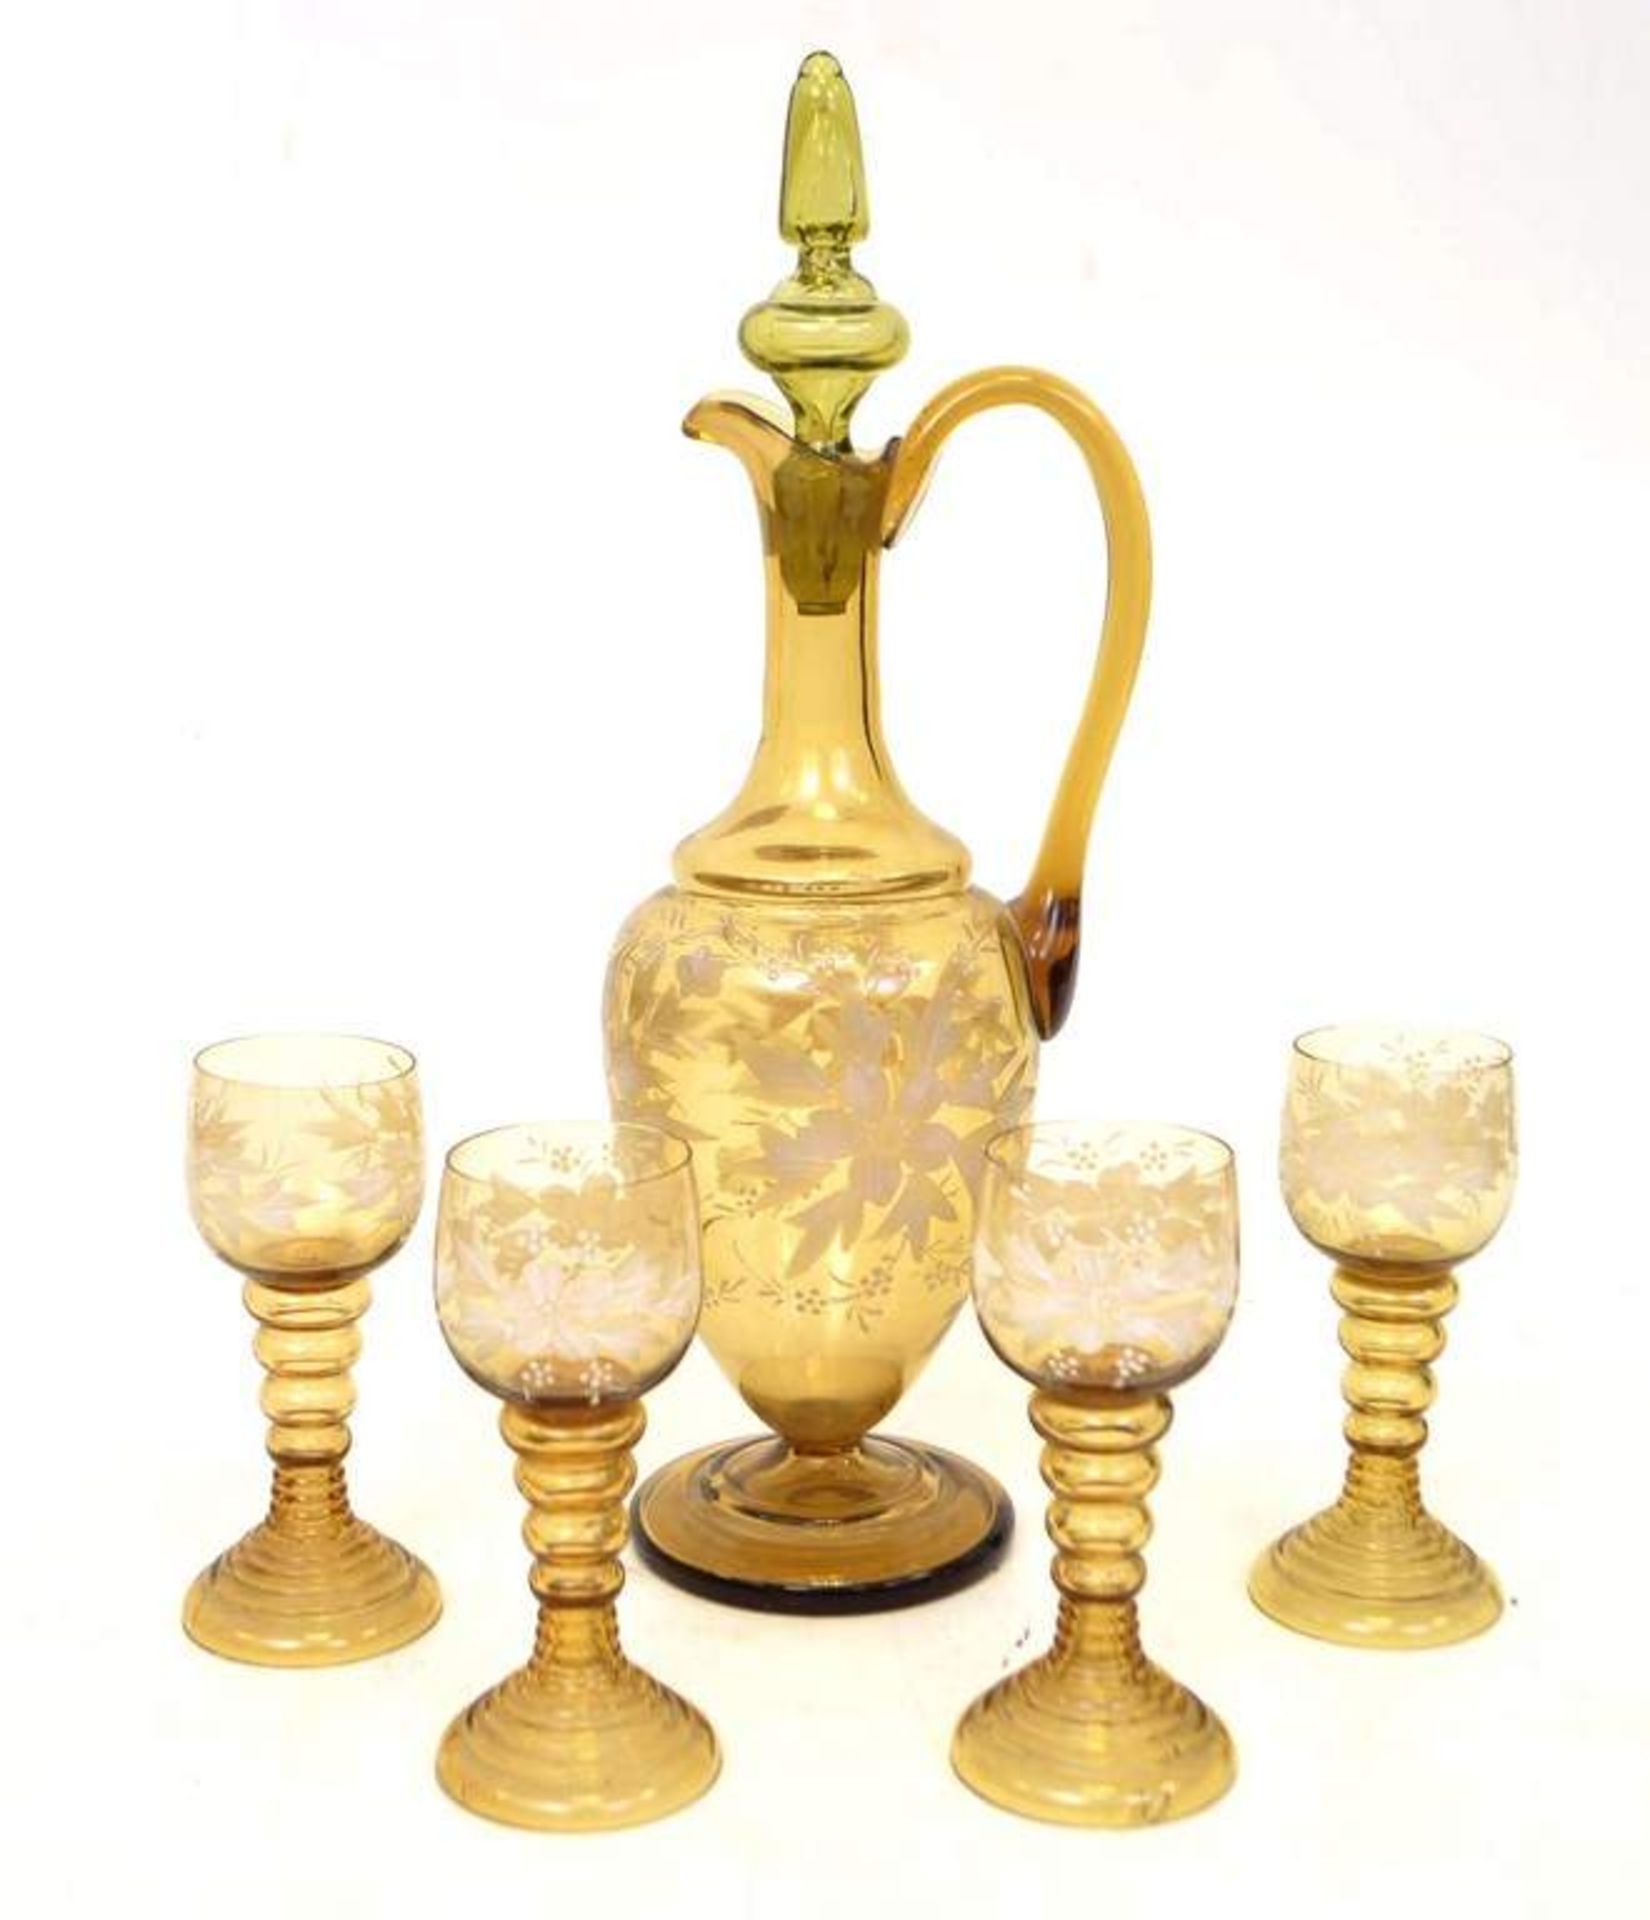 Karaffe und vier Weingläser bernsteinfarbenes Glas, mit weißer Emailblumenbemalung, H 42 cm, um